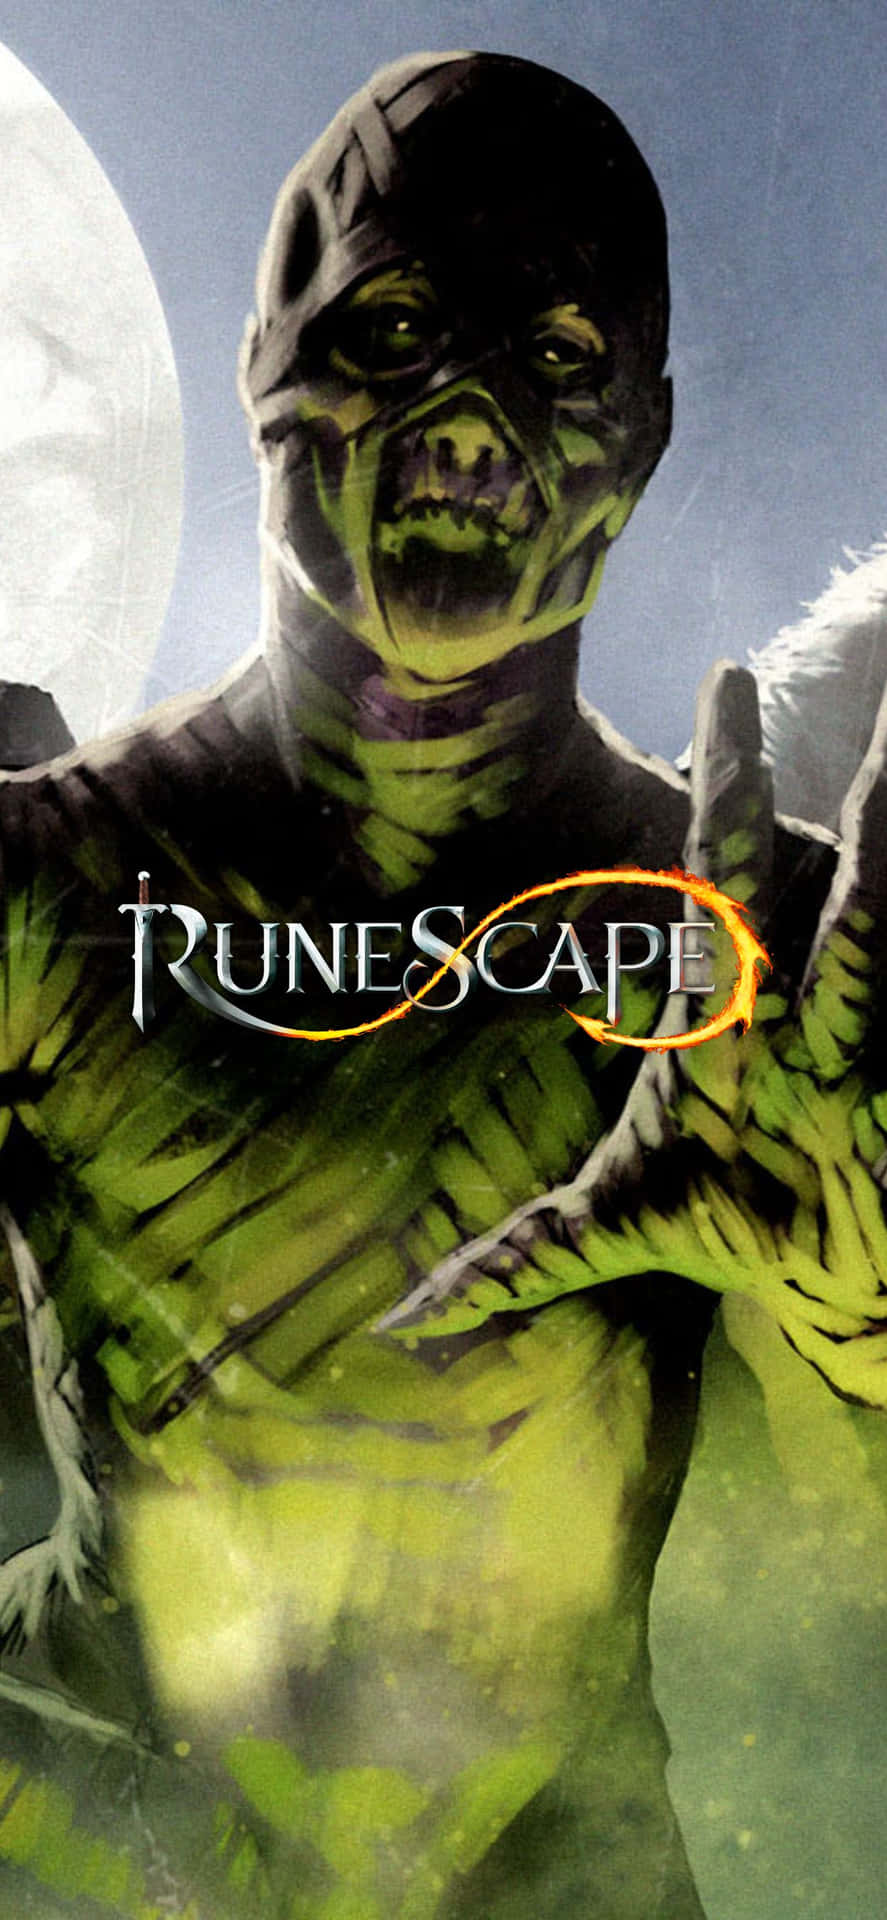 Runescape - Pc Game